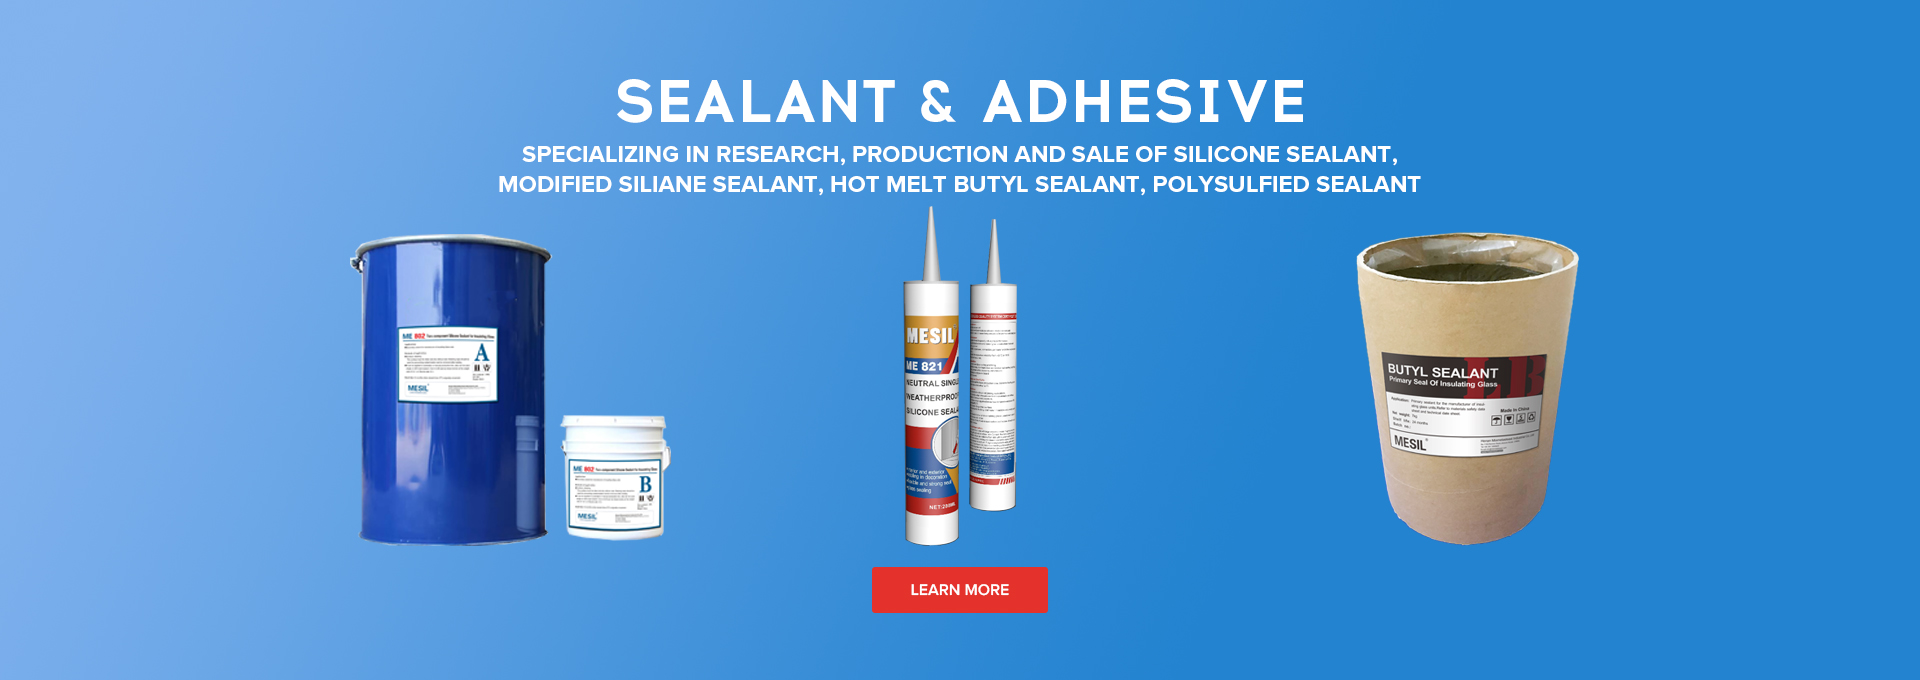 Sealant & Adhesive